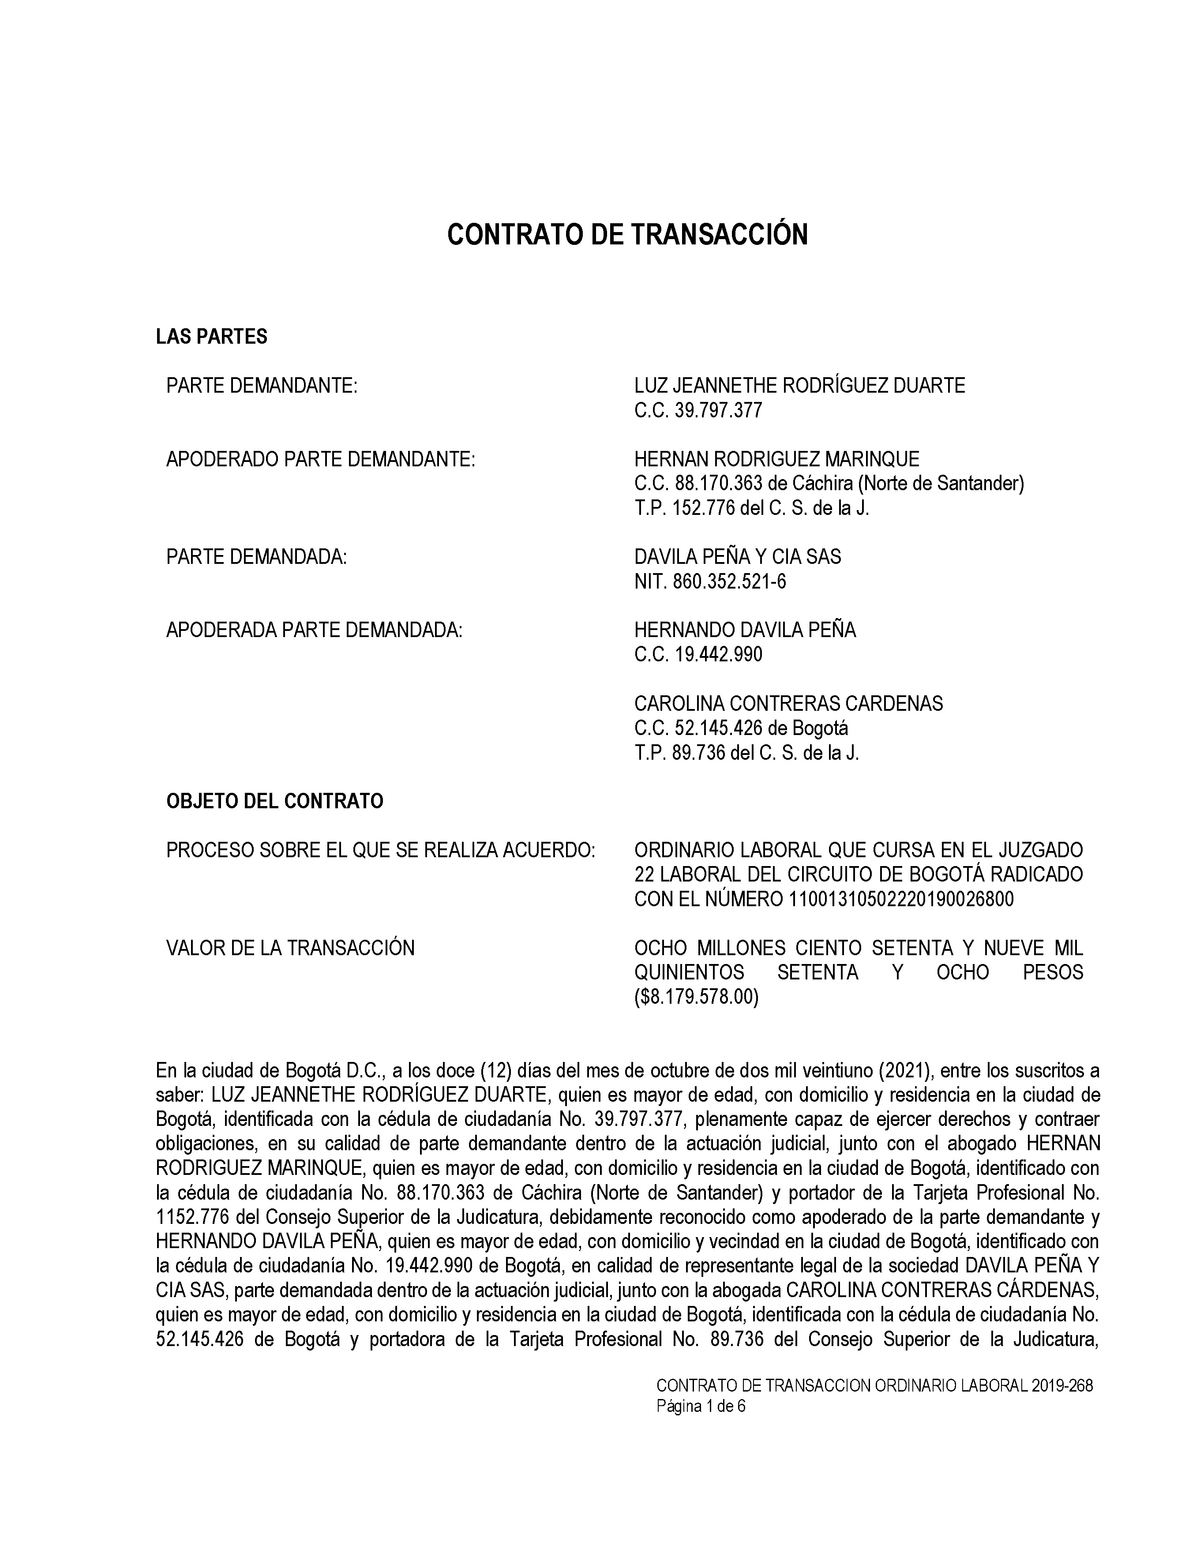 Contrato DE Transaccion Laboral - CONTRATO DE TRANSACCION ORDINARIO LABORAL  2019- CONTRATO DE - Studocu